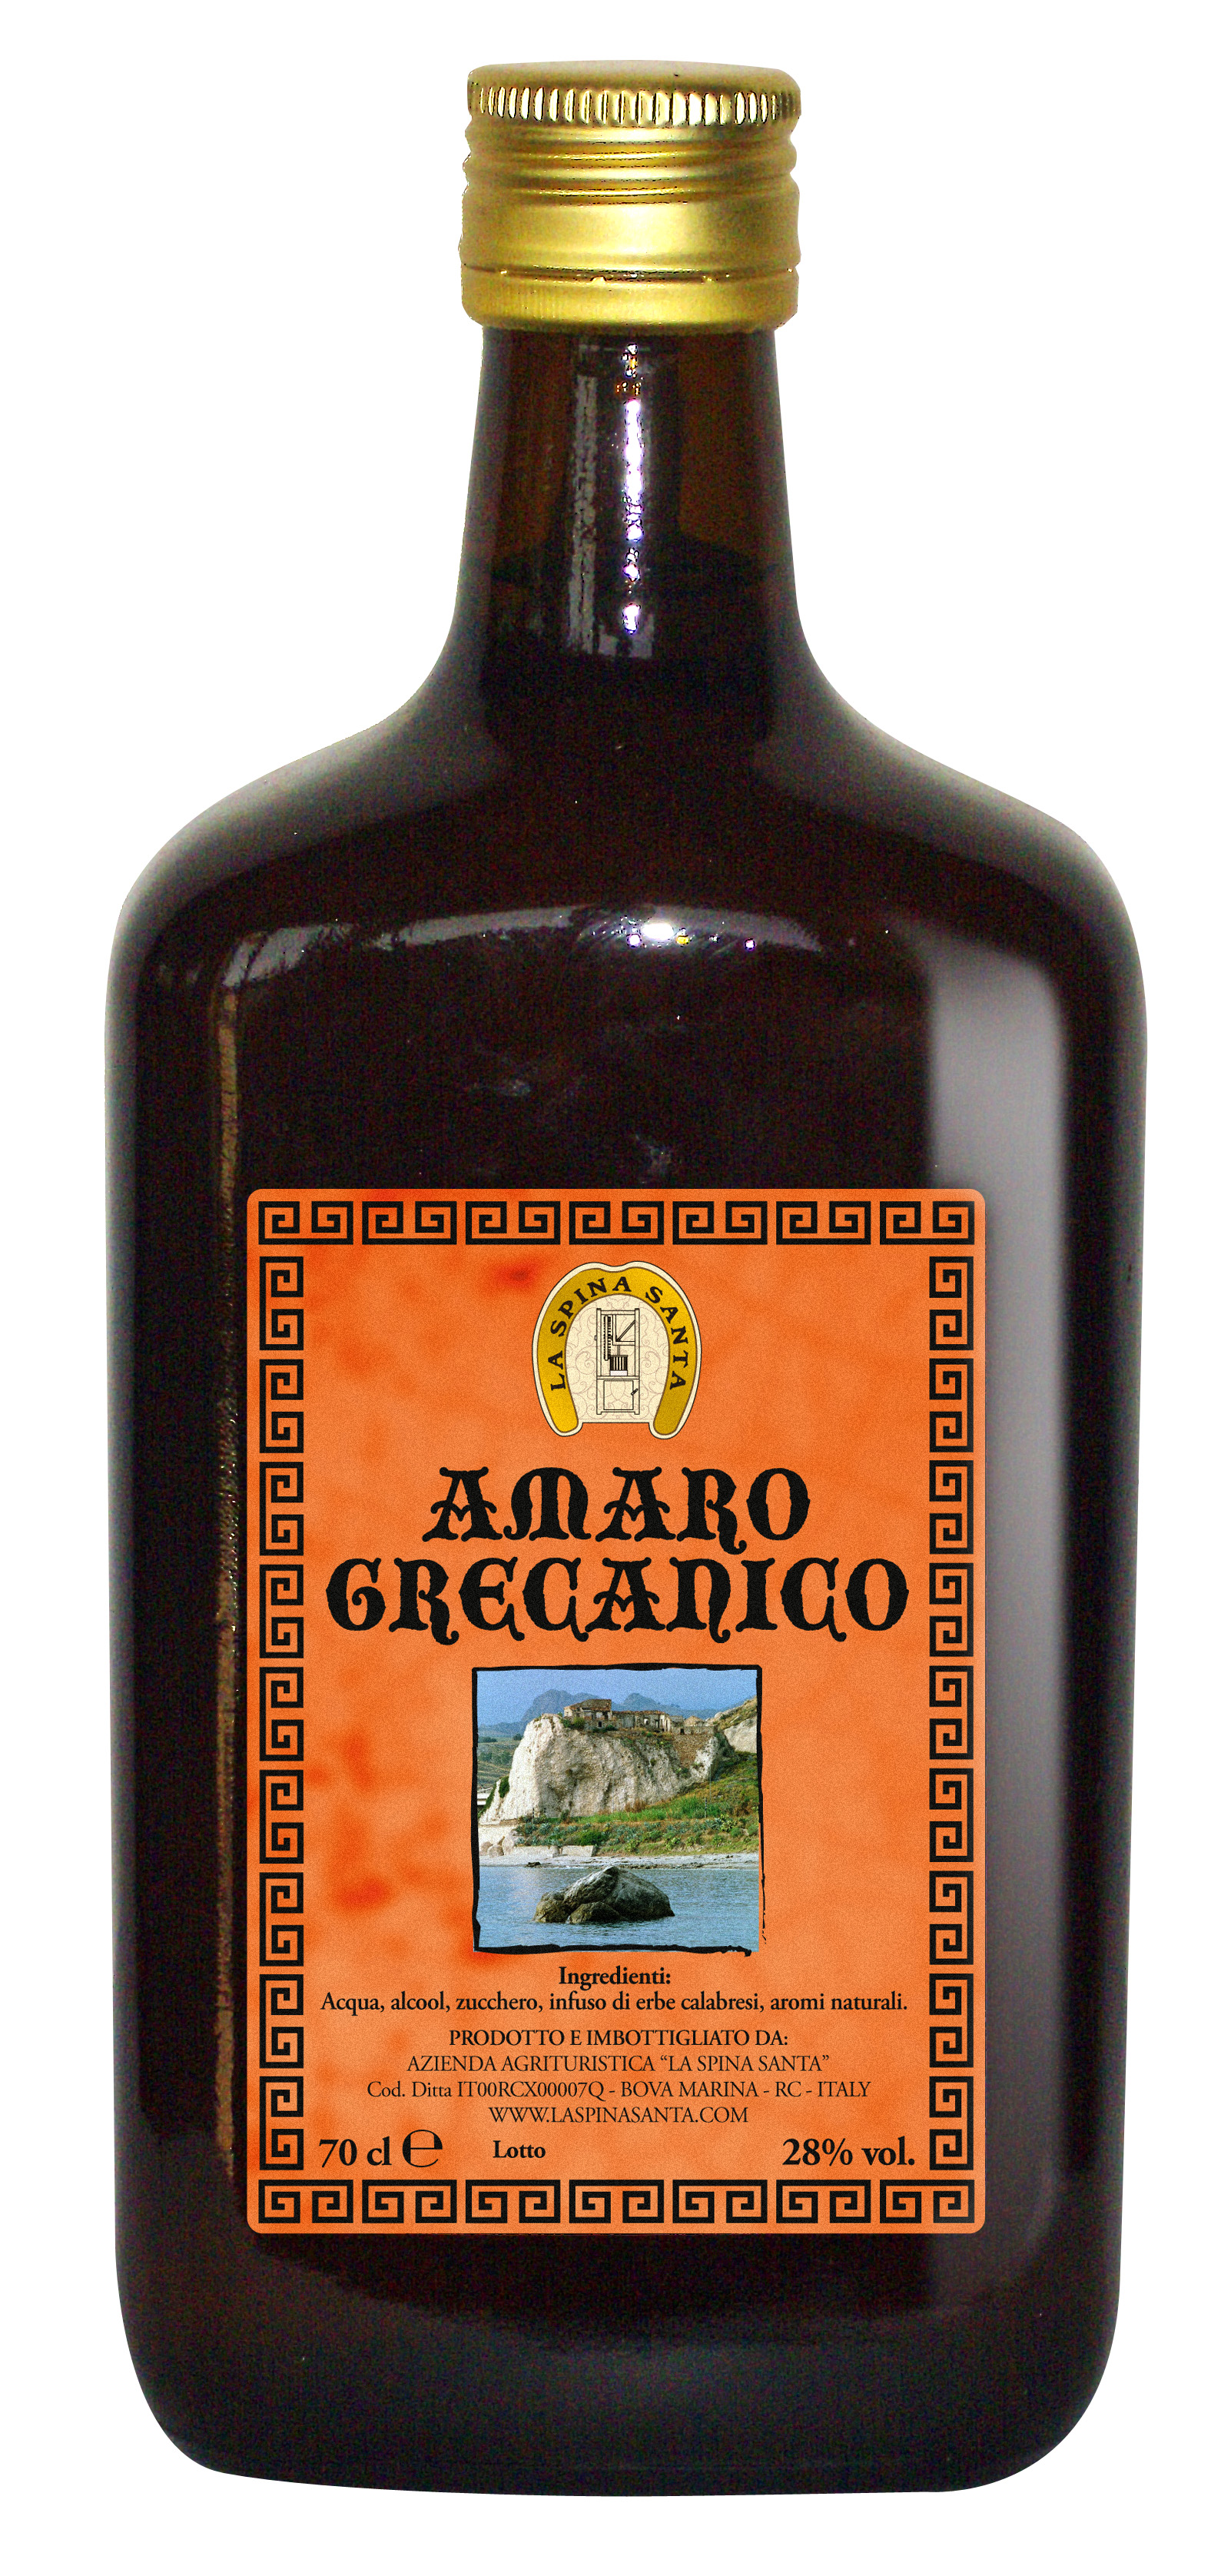 Amaro grecanico bt. 70 cl 28% vol